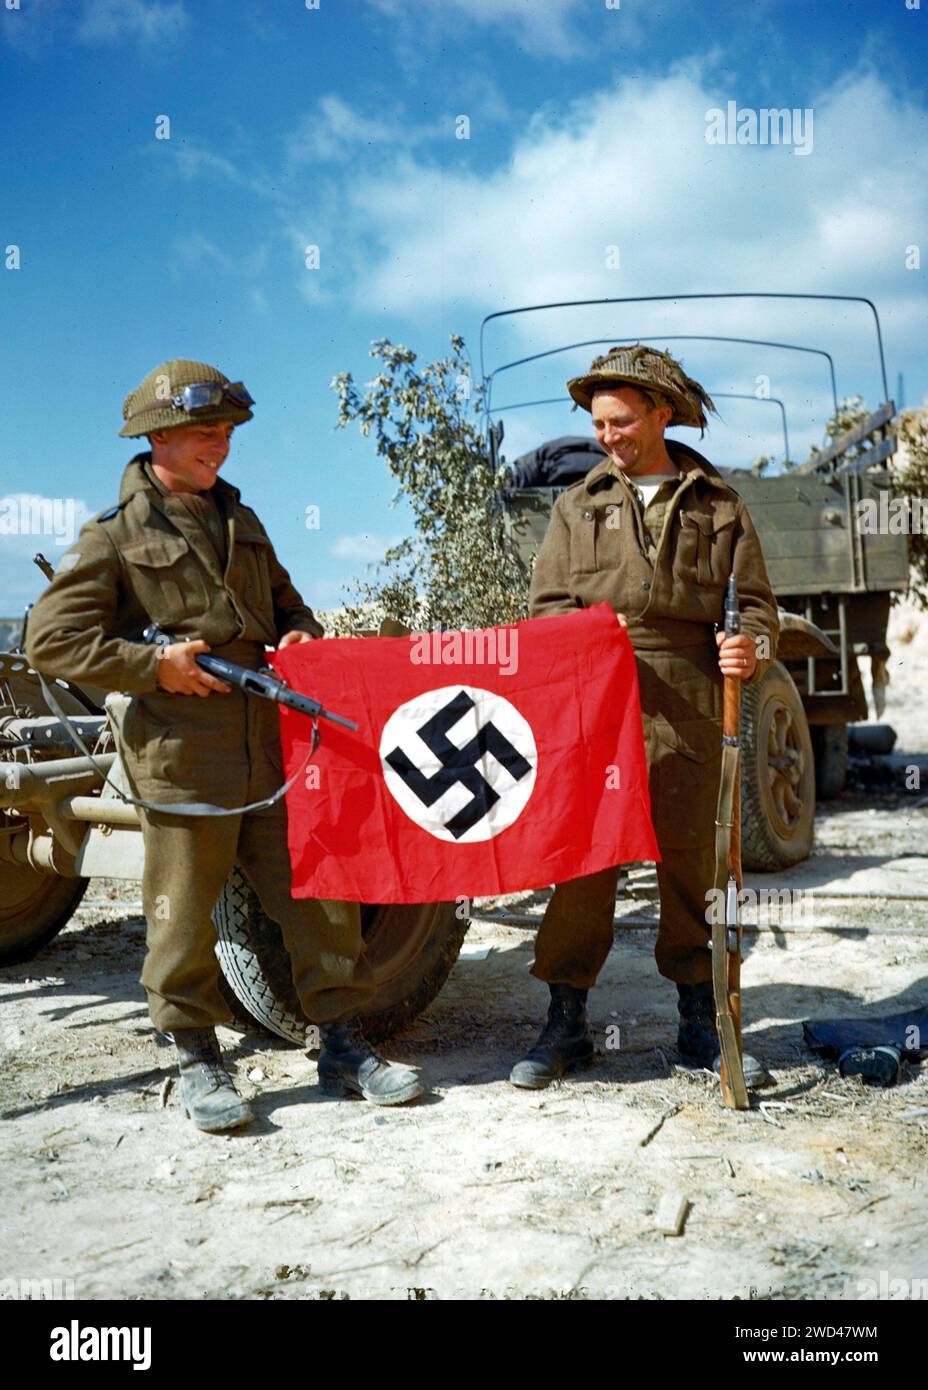 IN DER NÄHE VON HAUT MESNIL, FRANKREICH - 10. August 1944 - zwei Soldaten der kanadischen Armee hissen eine Nazi-Flagge, die sie in einem Steinbruch südlich von Hautmesnil, Frankreich, gefangen nahmen. Stockfoto